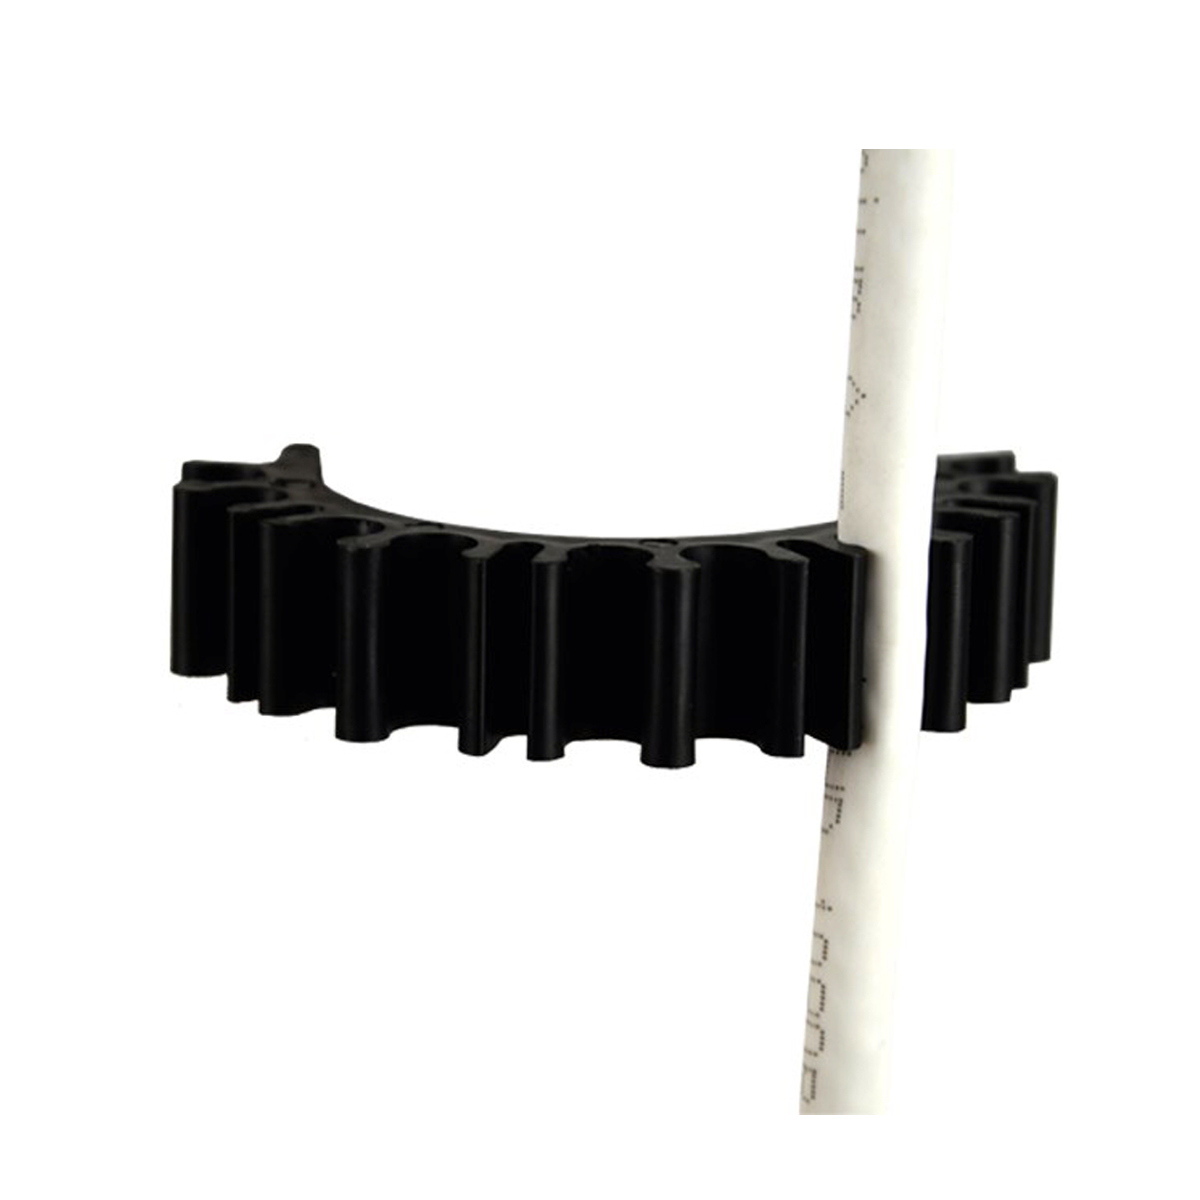 Kabel-Klemmhalterung Mastclip SAT Kabelclip 48-50mm für 2x PREMIUMX Masten Kabel-Halter